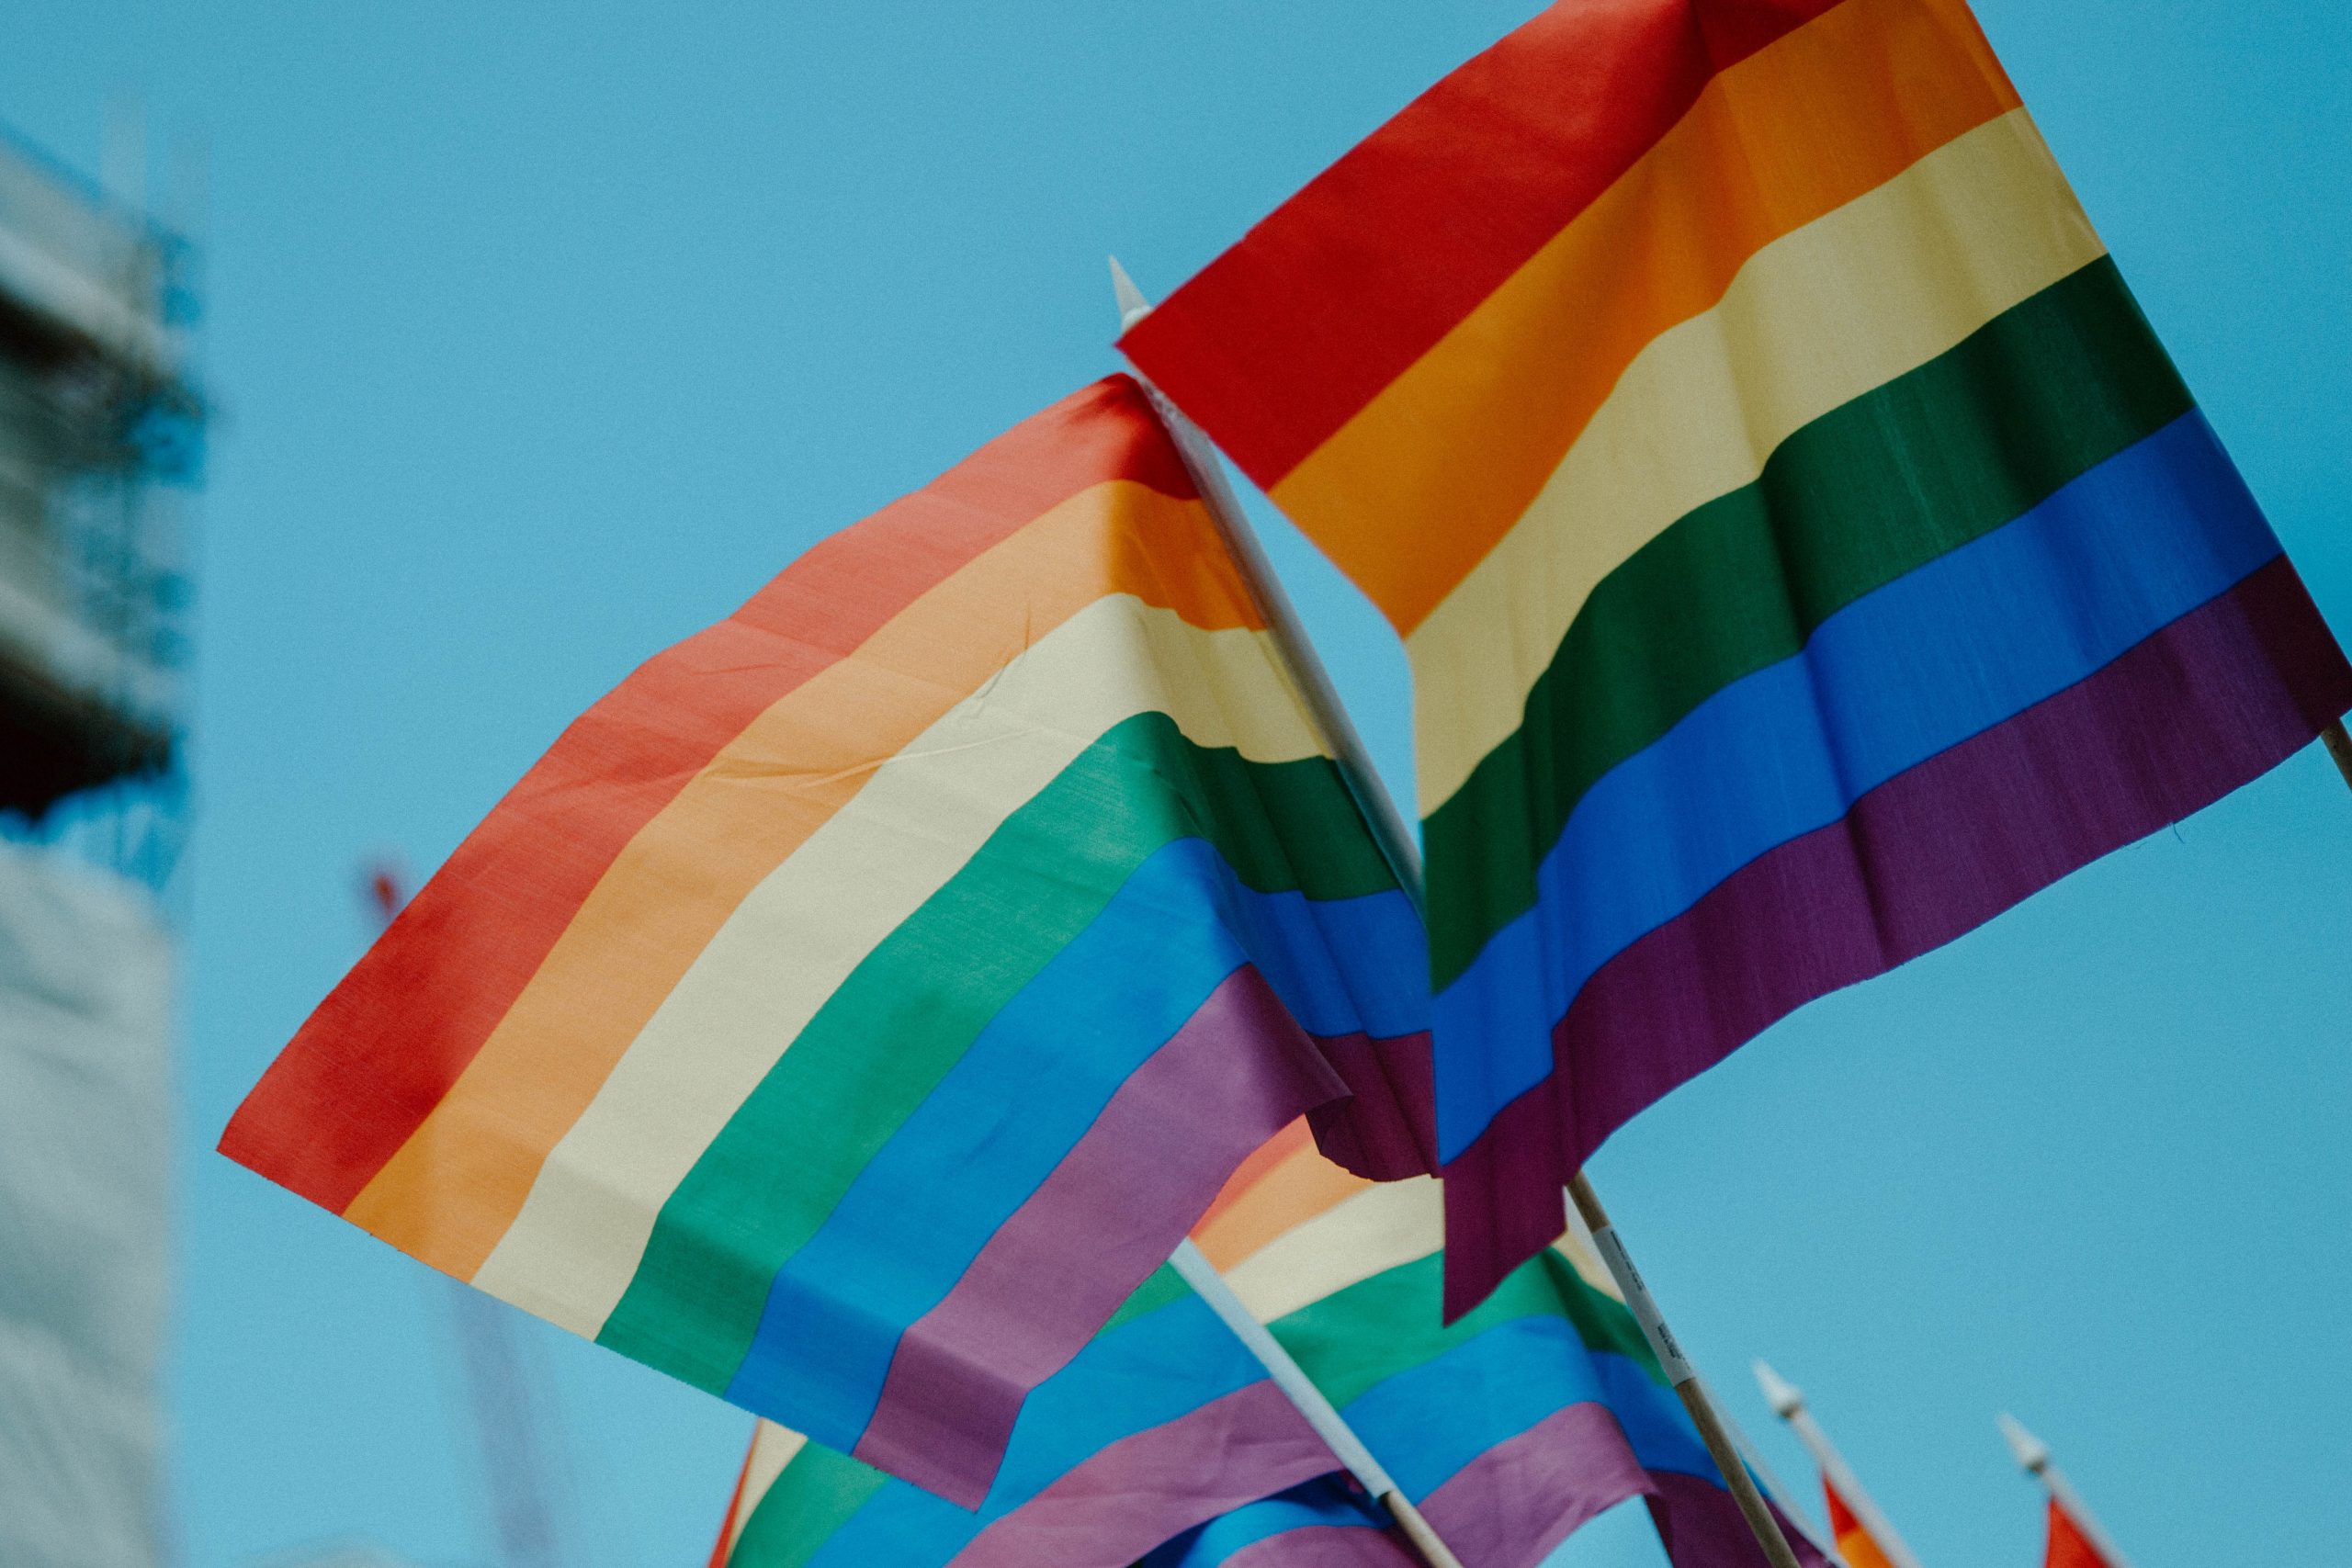 Okayama passará a emitir certificados de união LGBT